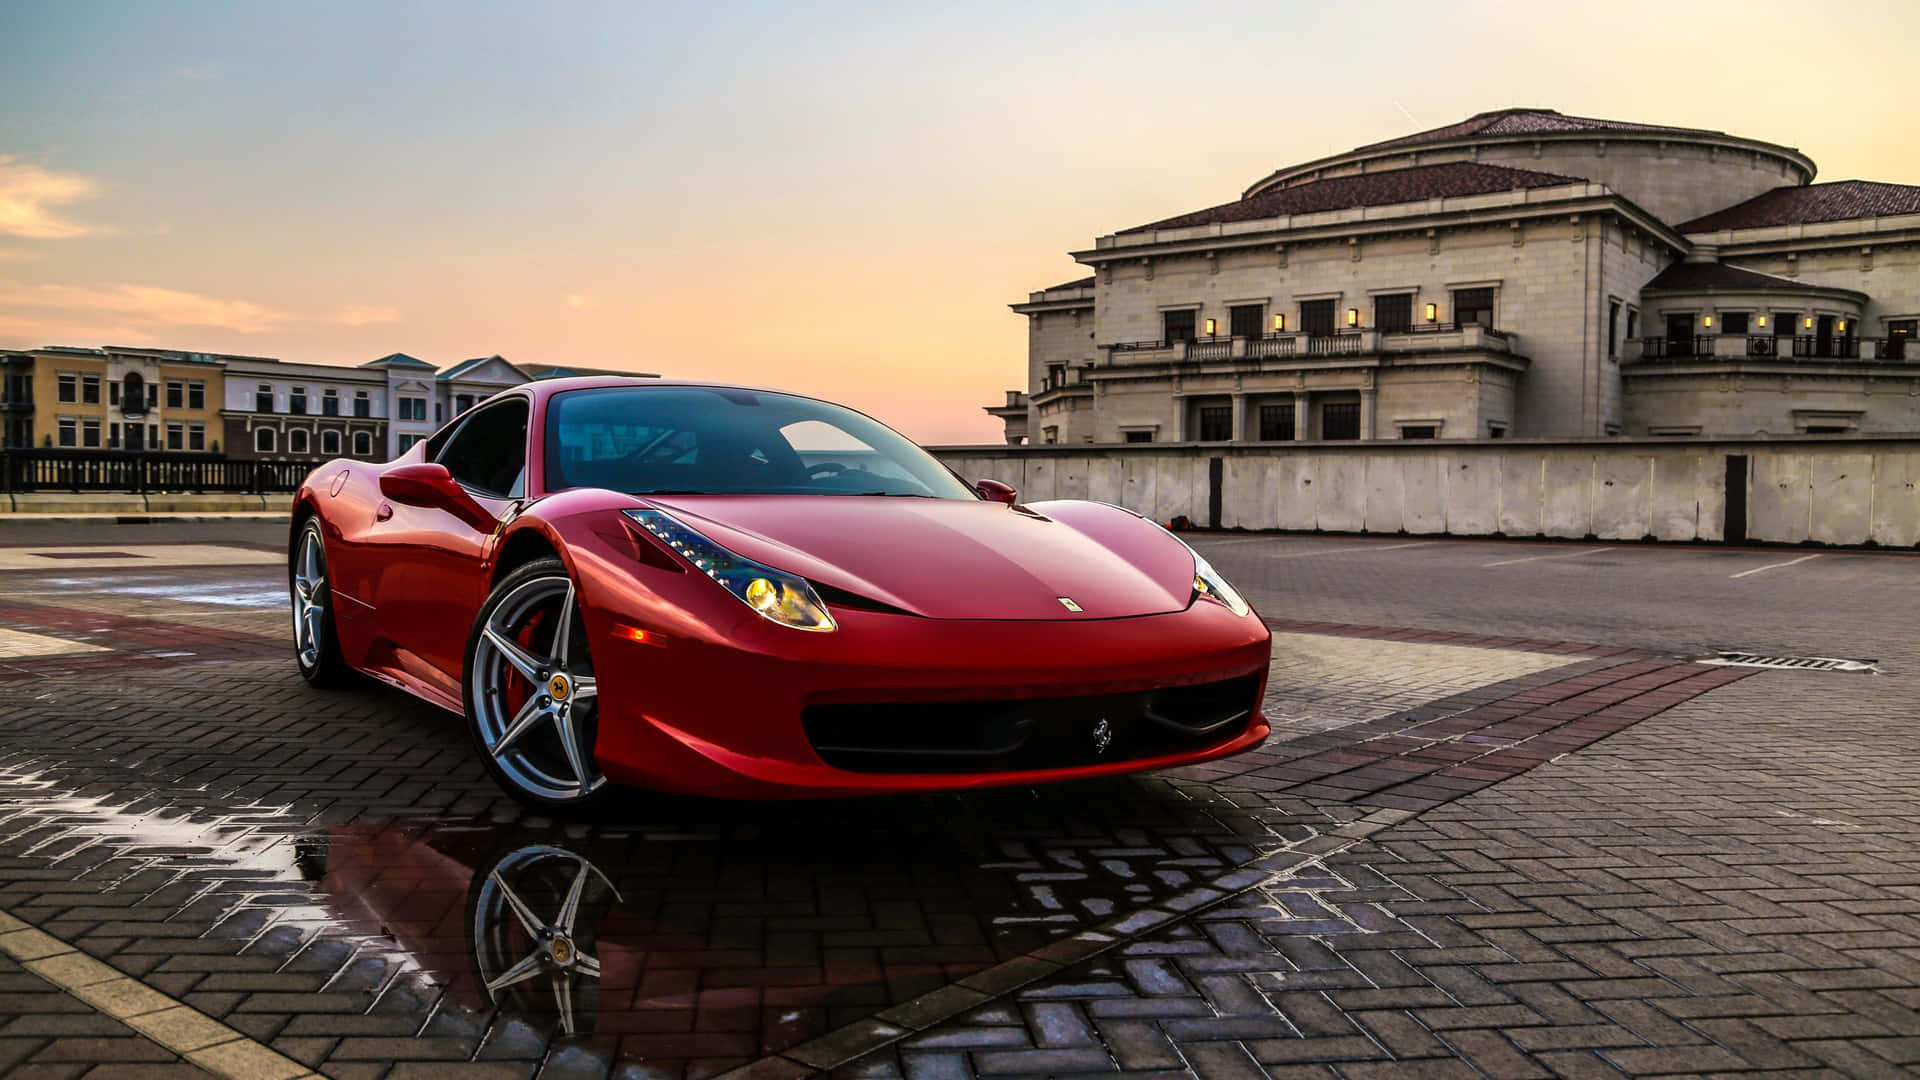 Coole Ferrari-autos 3840 X 2160 Wallpaper